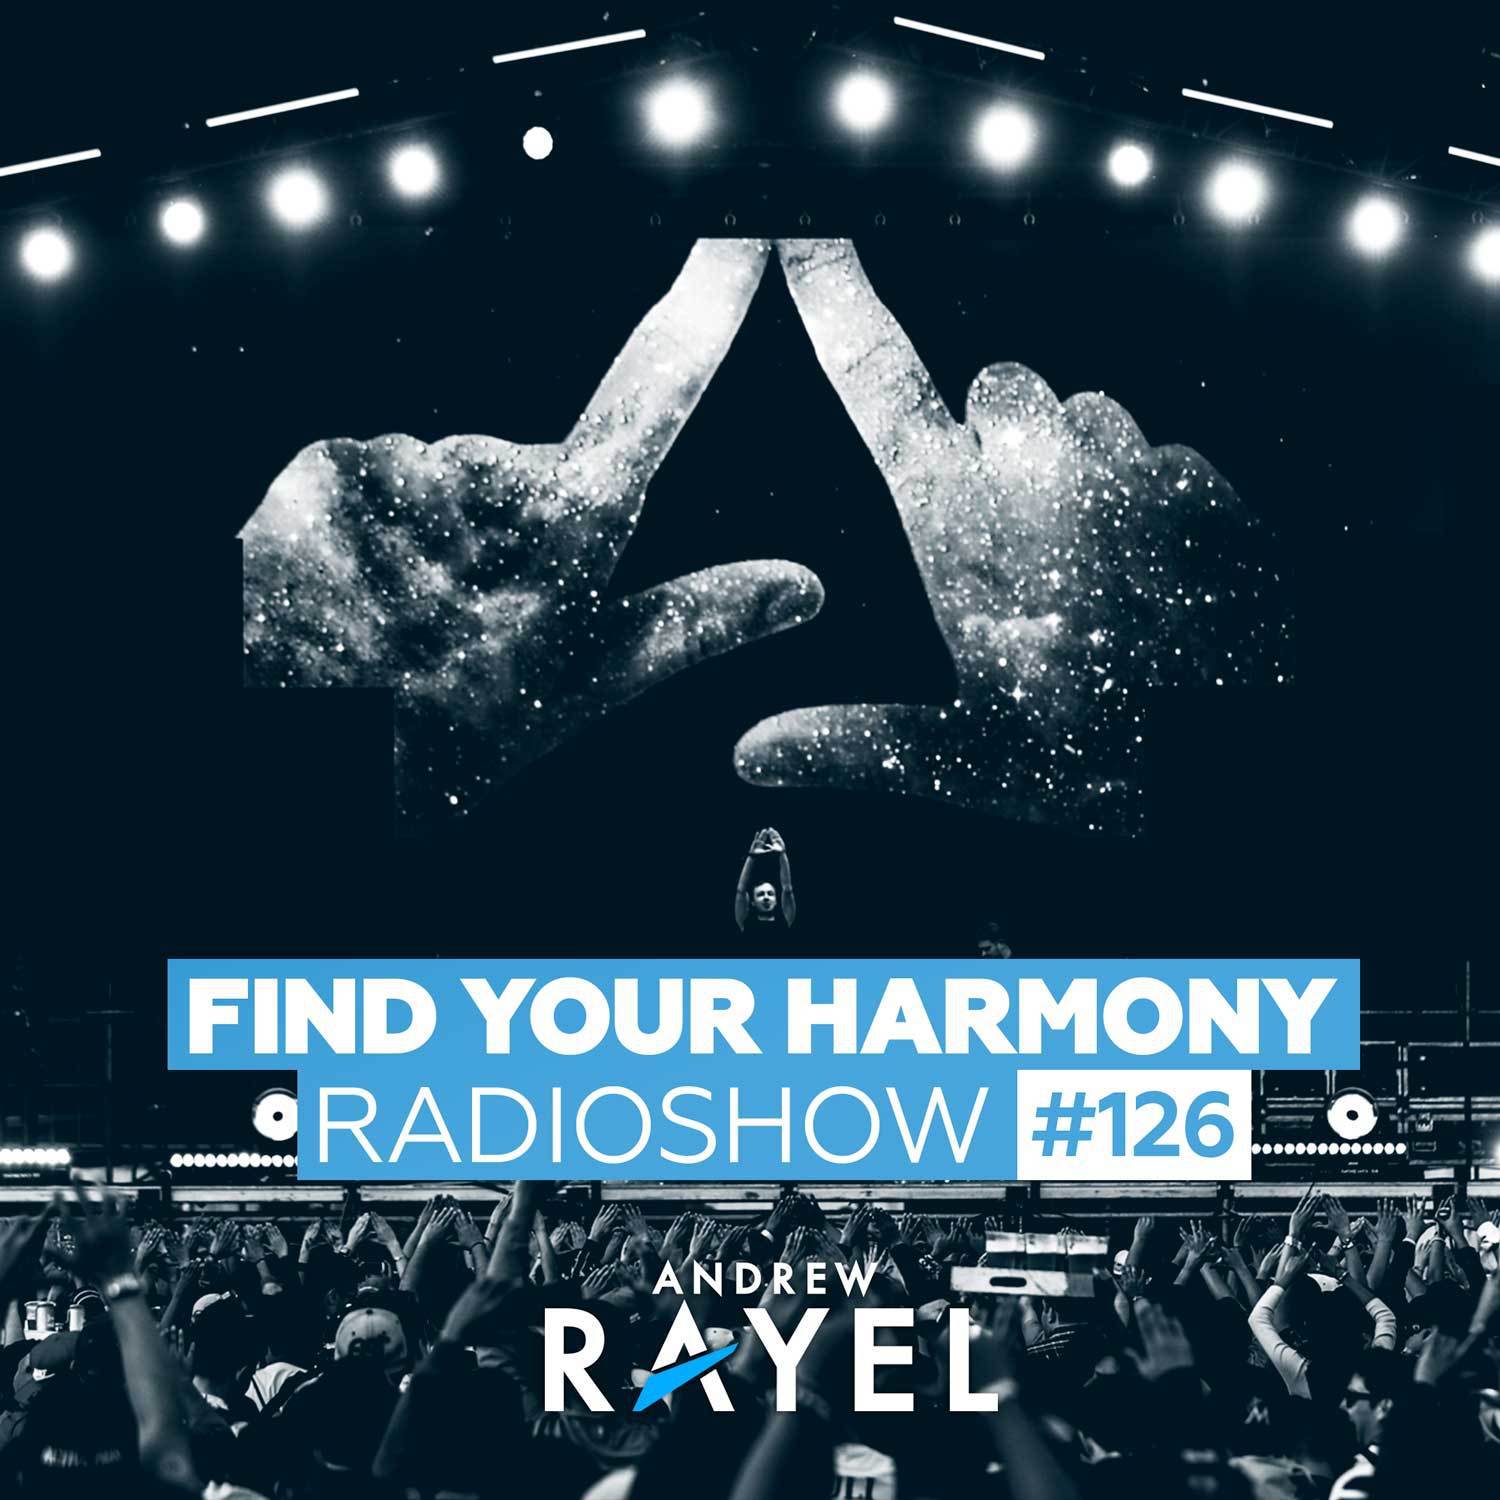 Find Your Harmony Radioshow #126